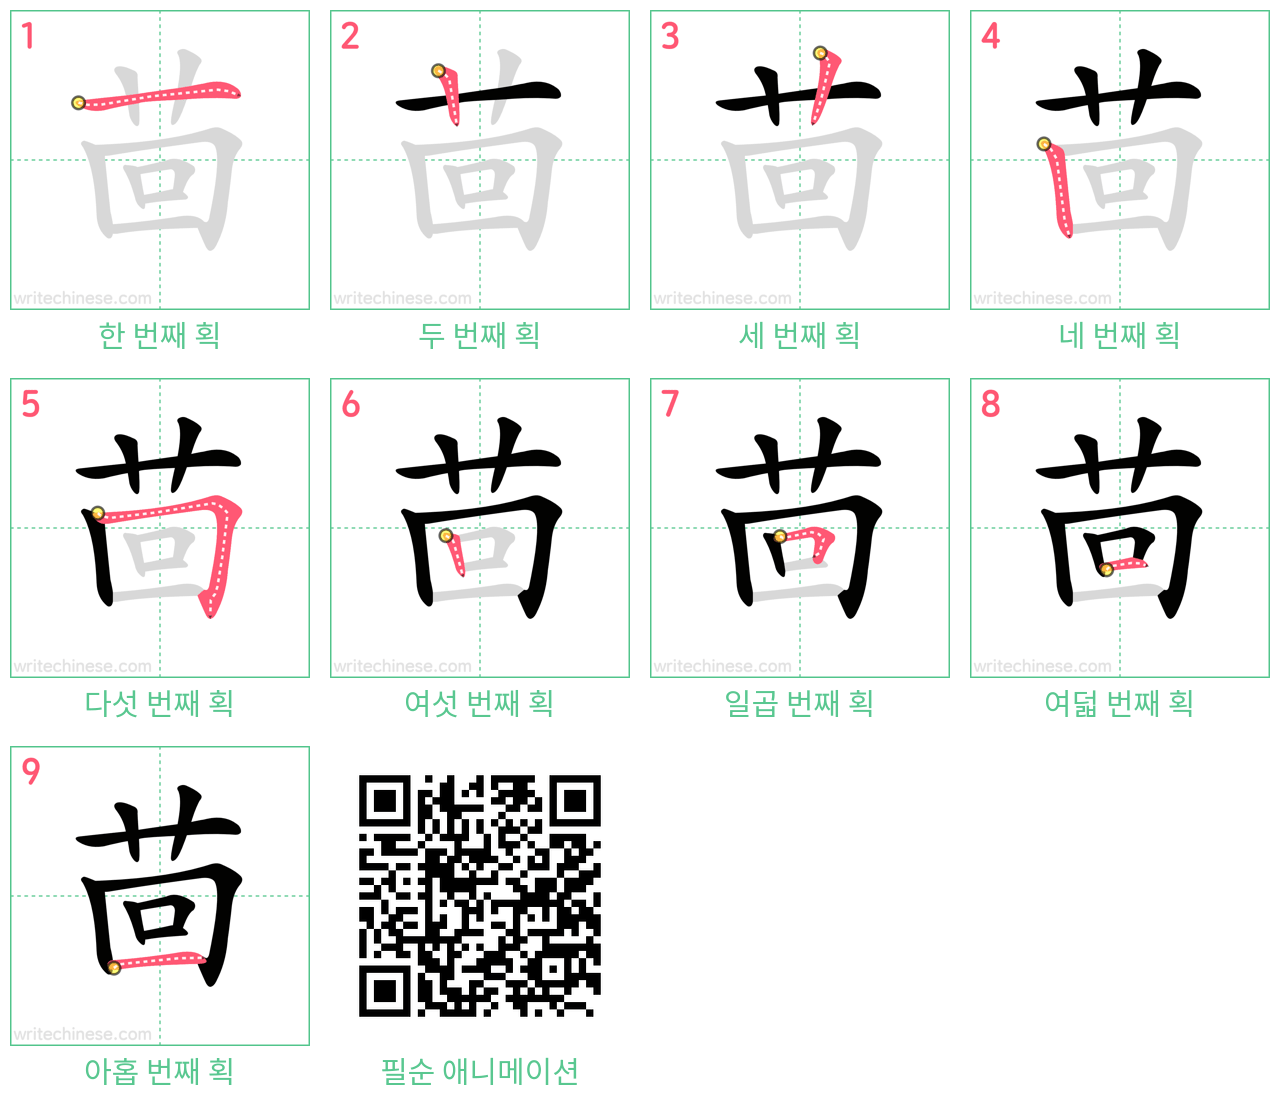 茴 step-by-step stroke order diagrams